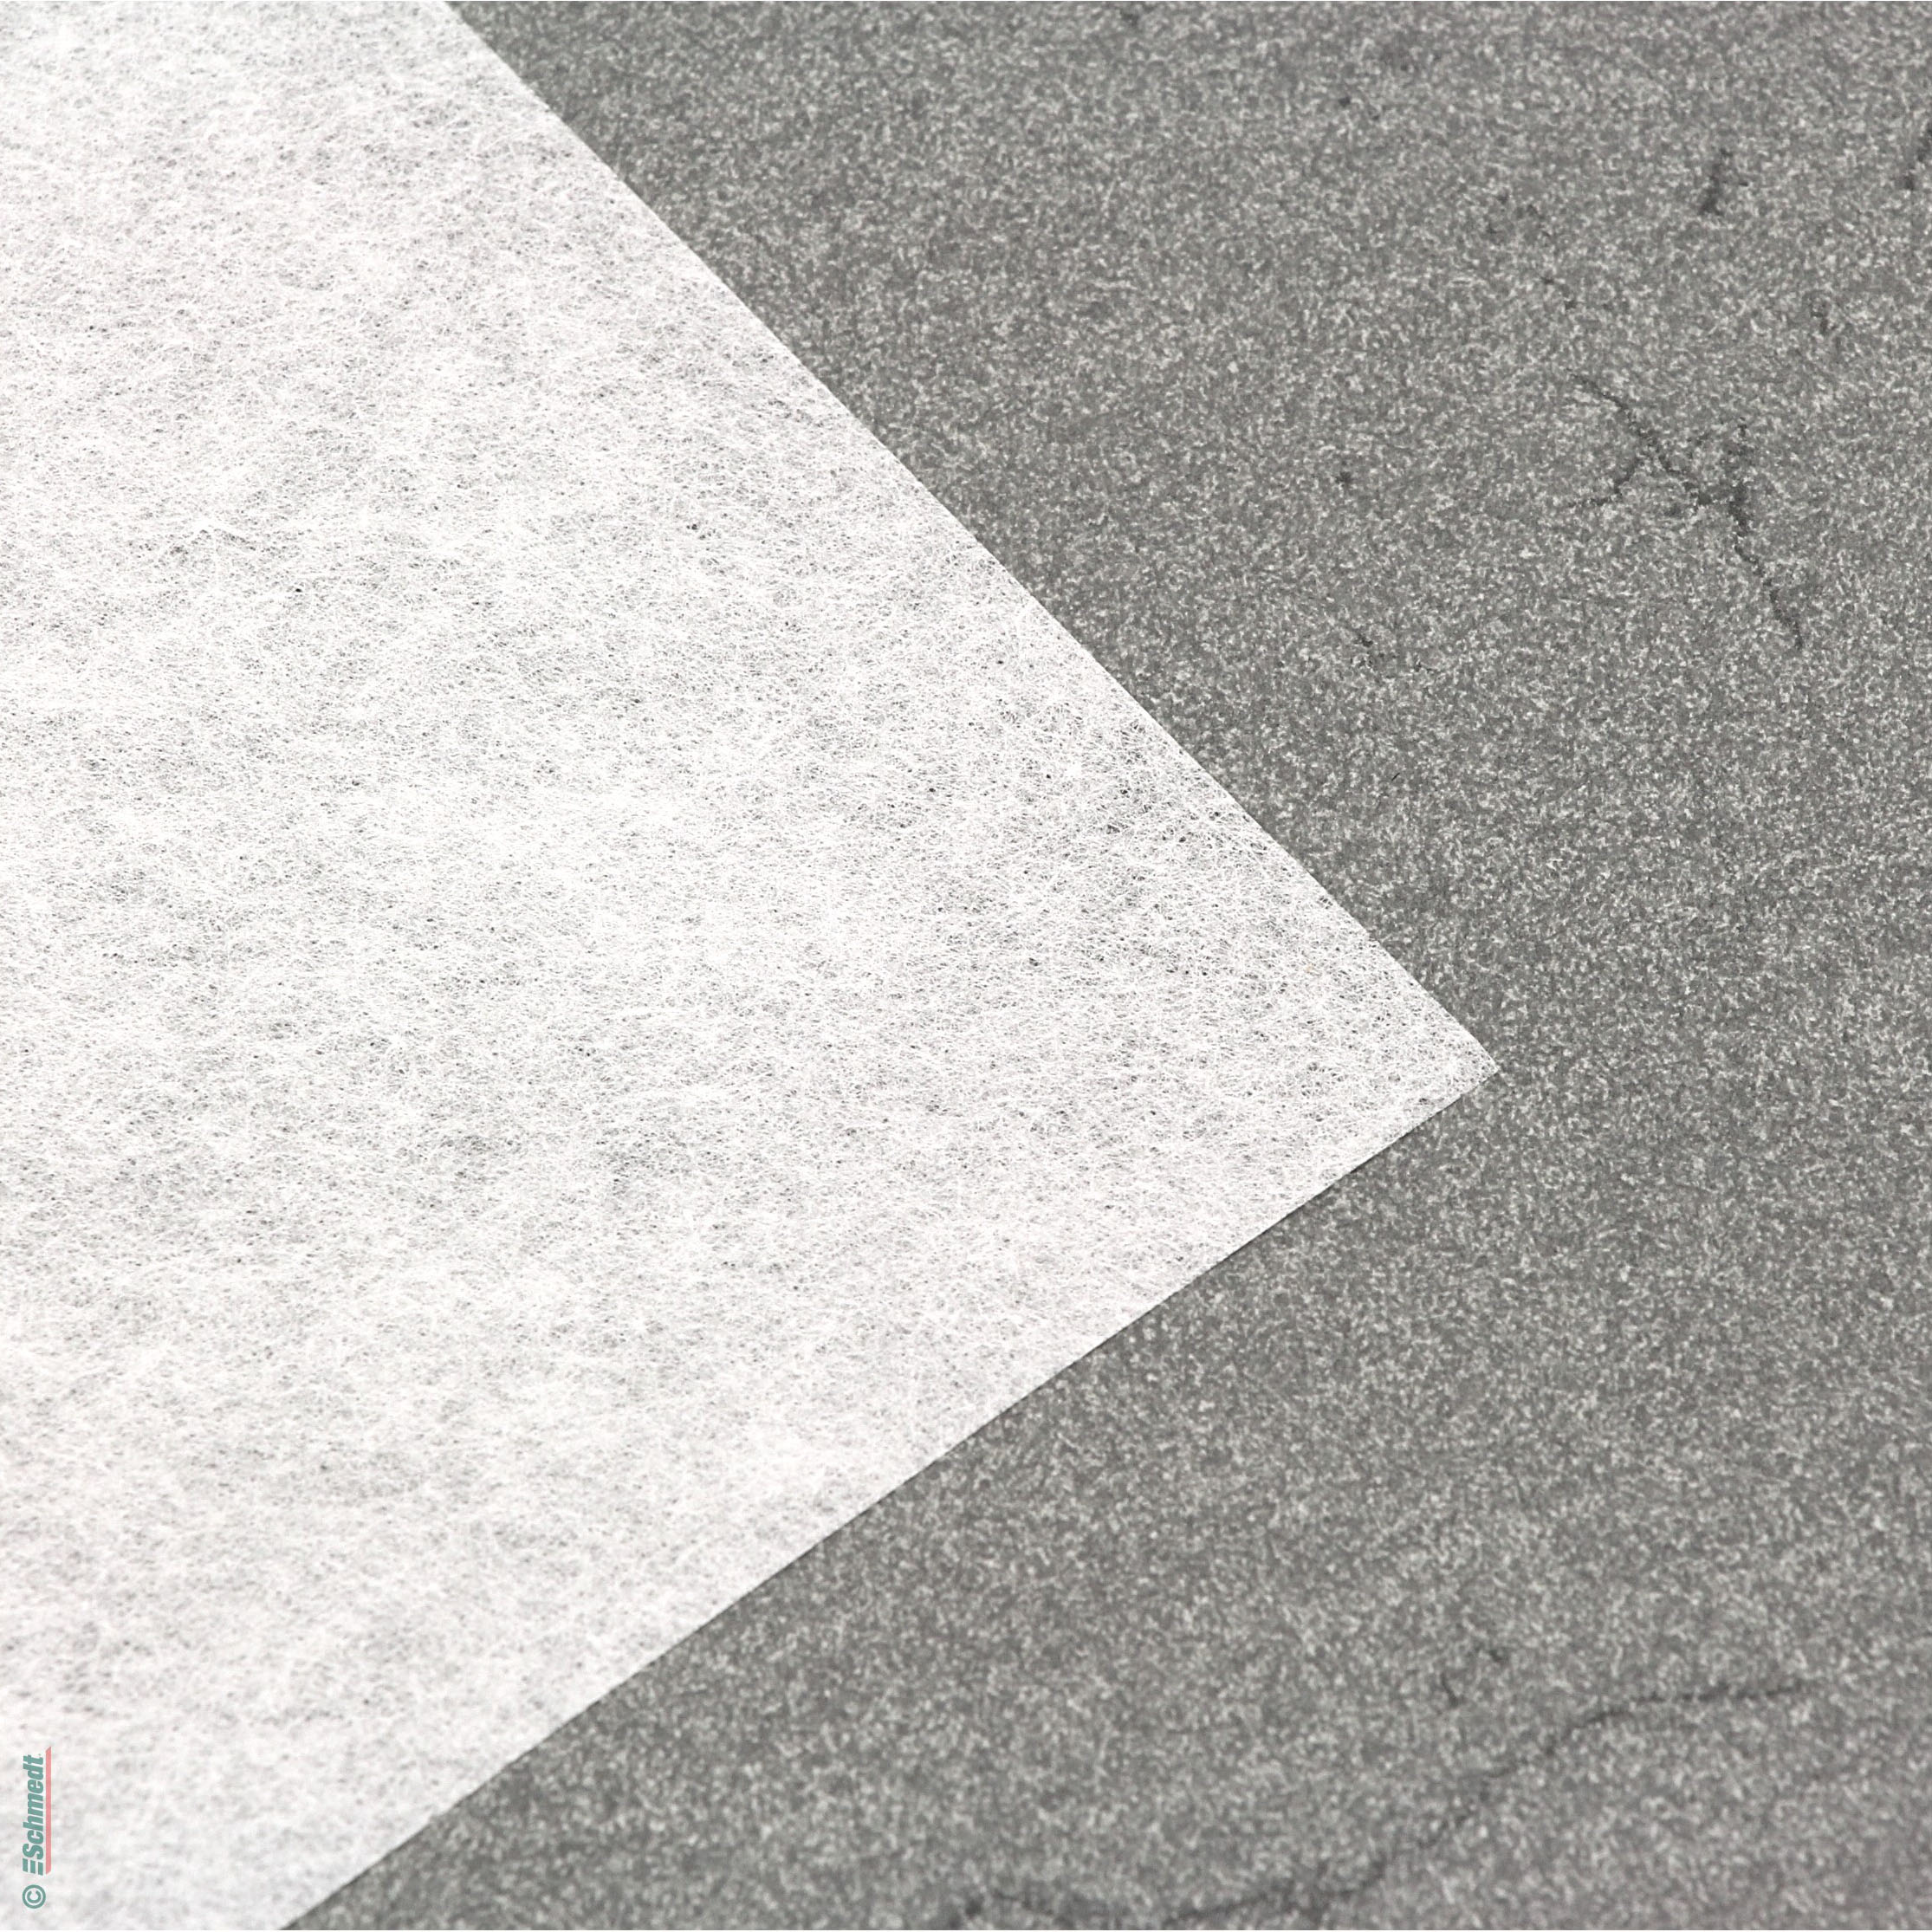 Japanpapier Kizuki-Kozo - Flächengewicht (in g/m²) 17 - Farbe weiß - Restaurierung, Archivierung, Konservierung...